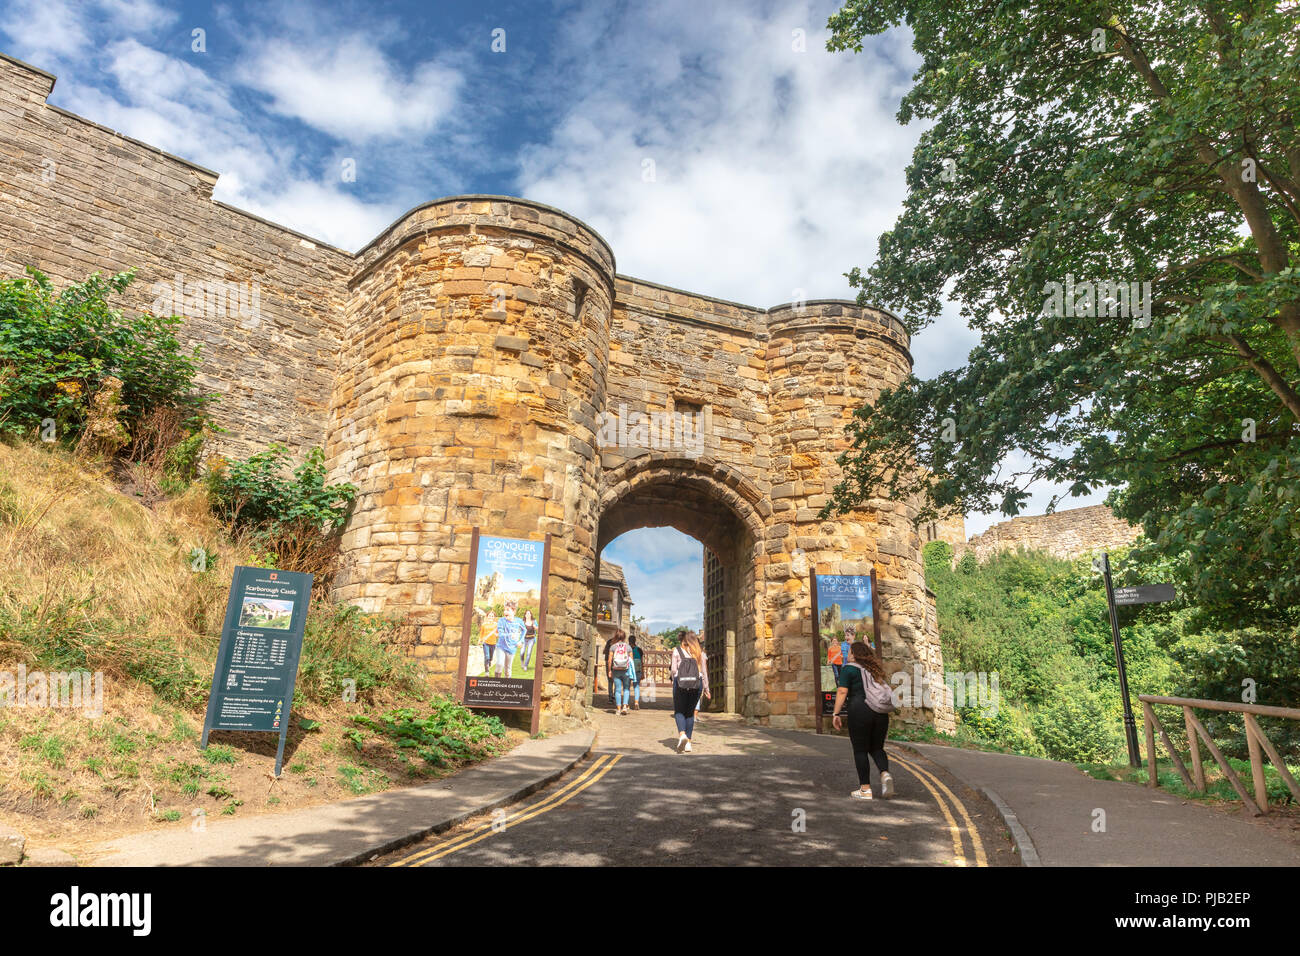 Ingresso ad arco nel castello medievale in Scarborough, una popolare attrazione turistica. Foto Stock